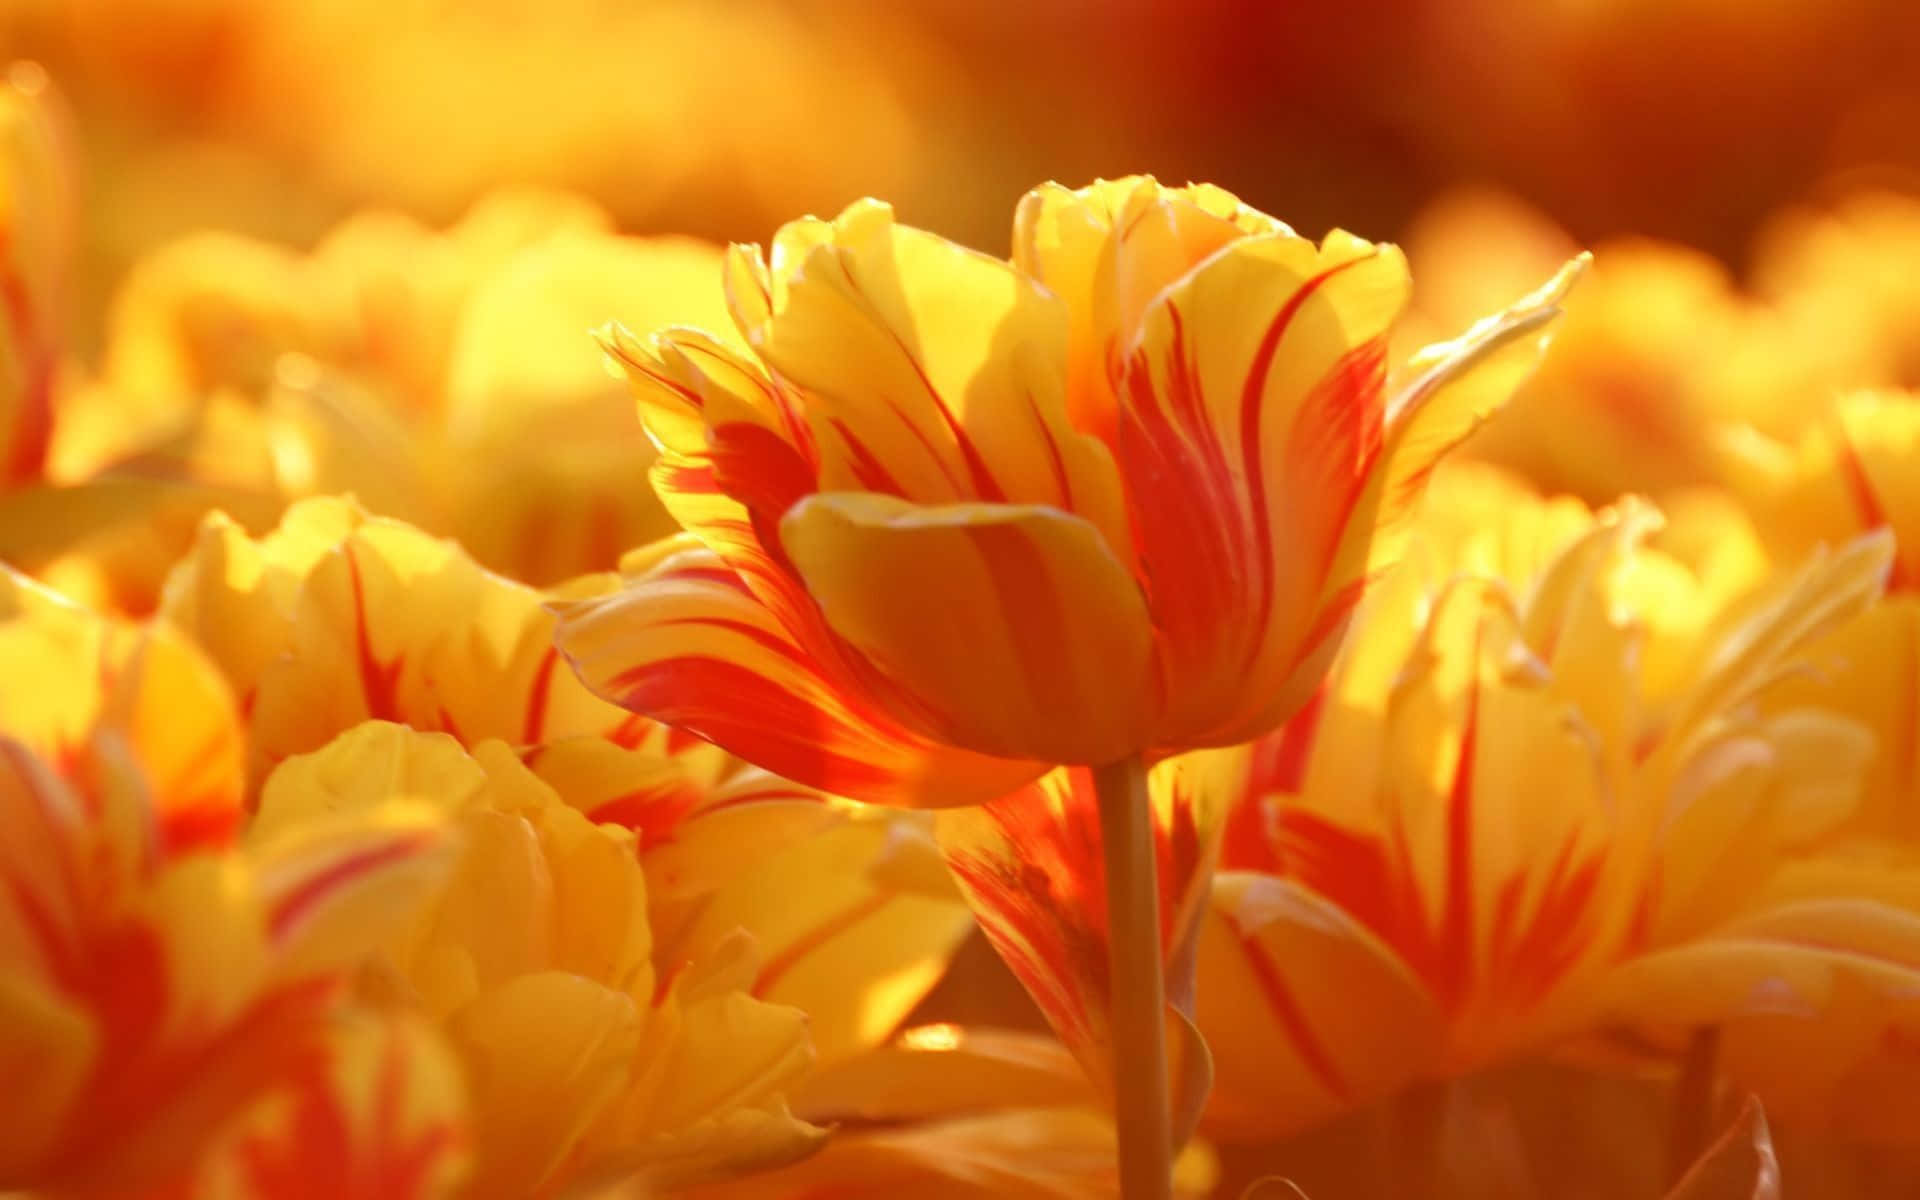 Tulipanidel Giardino Su Sfondo Giallo Arancio